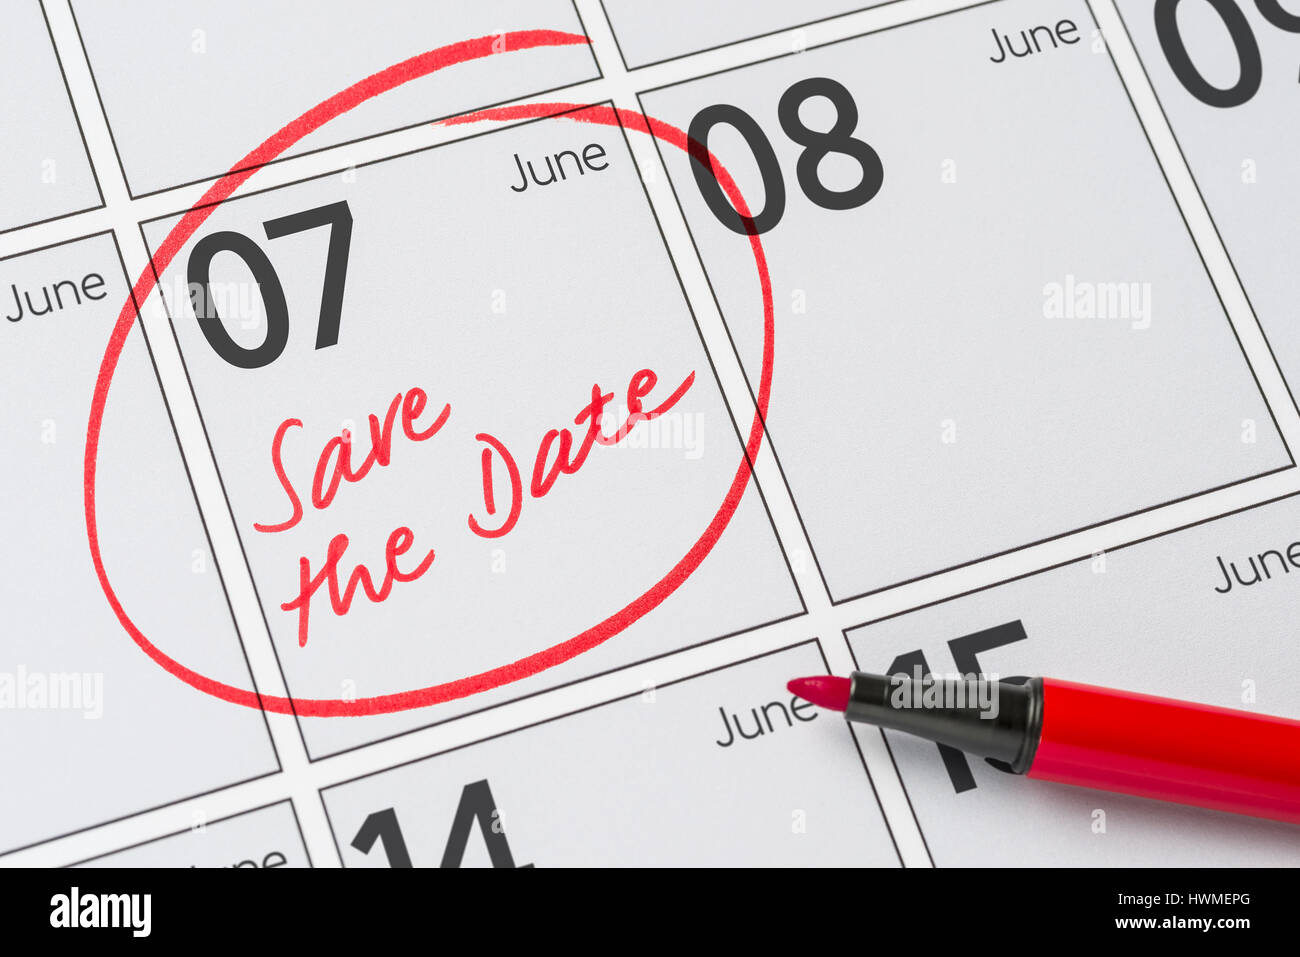 Enregistrer la date inscrite sur un calendrier - juin 07 Banque D'Images